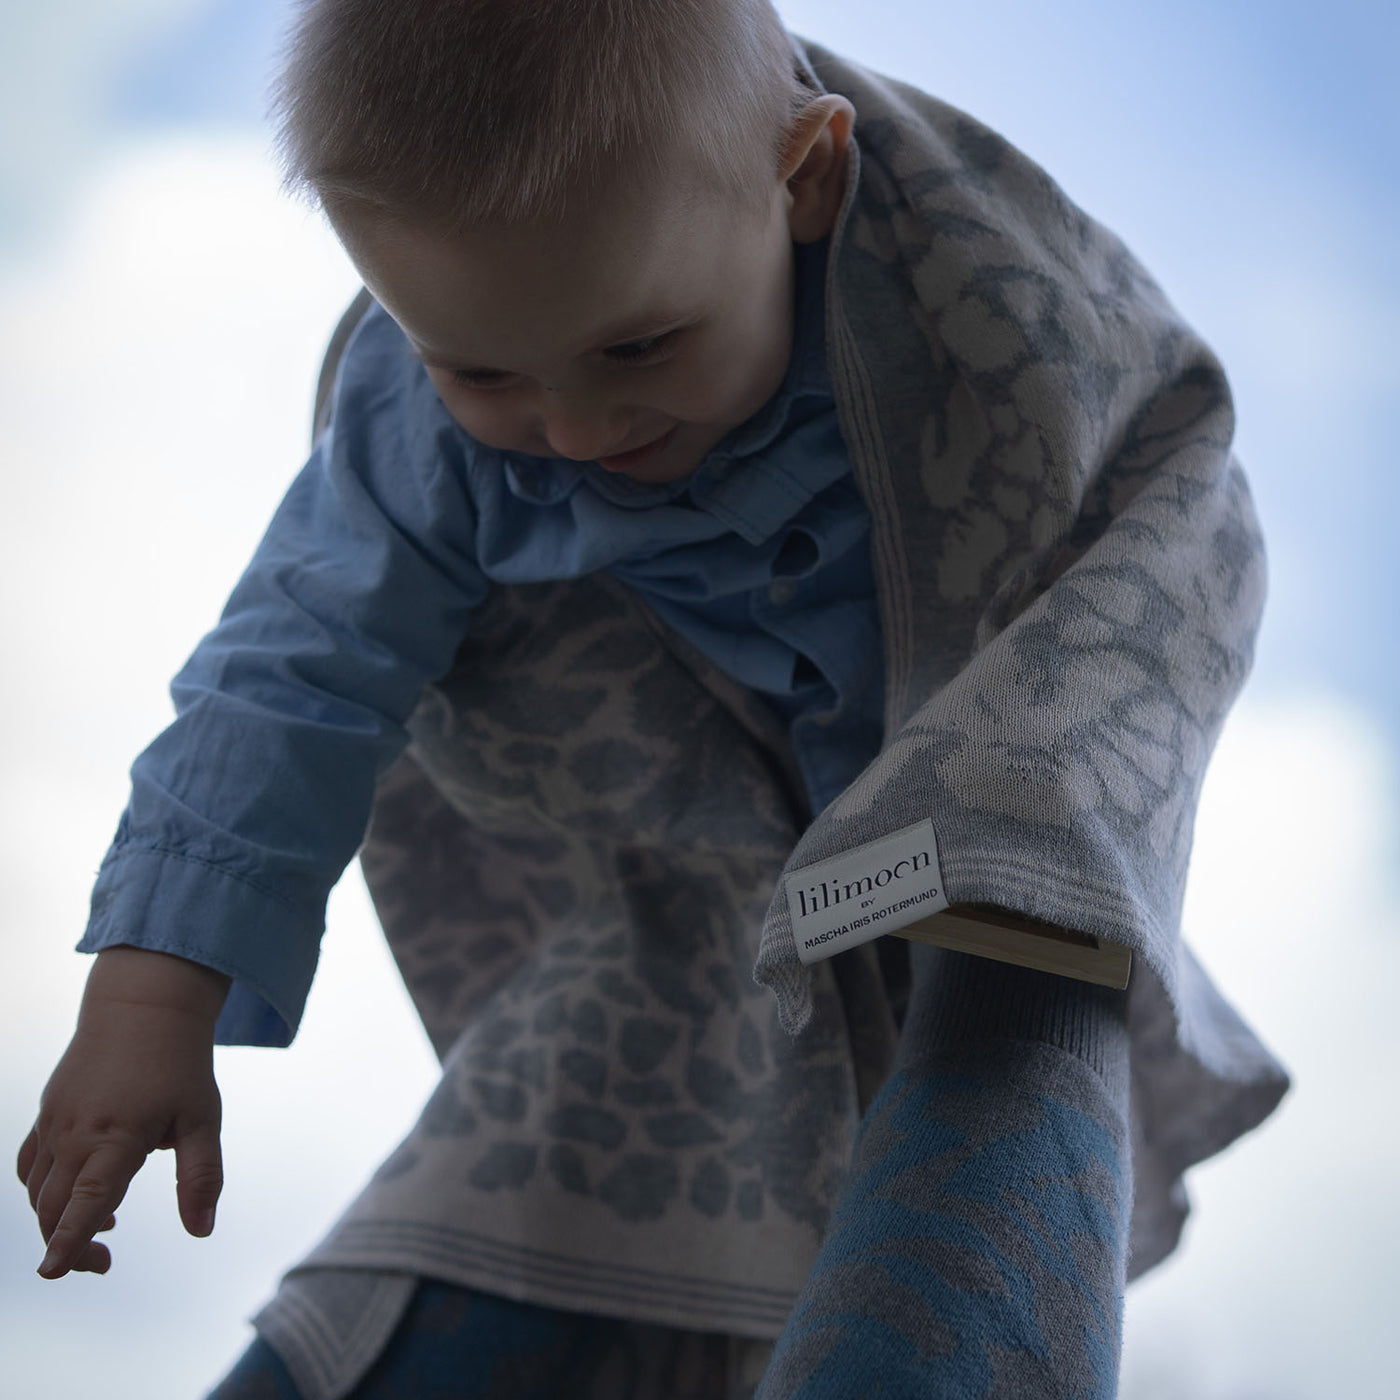 Personalisierte Babydecke Iris aus Baumwolle mit Kaschmir in Grau und Cremeweiss. Ein ganz besonderes Geschenk zur Geburt und Taufe für Babys und Kleinkinder. Individuell personalisierbar mit dem Wunschnamen des Kindes.